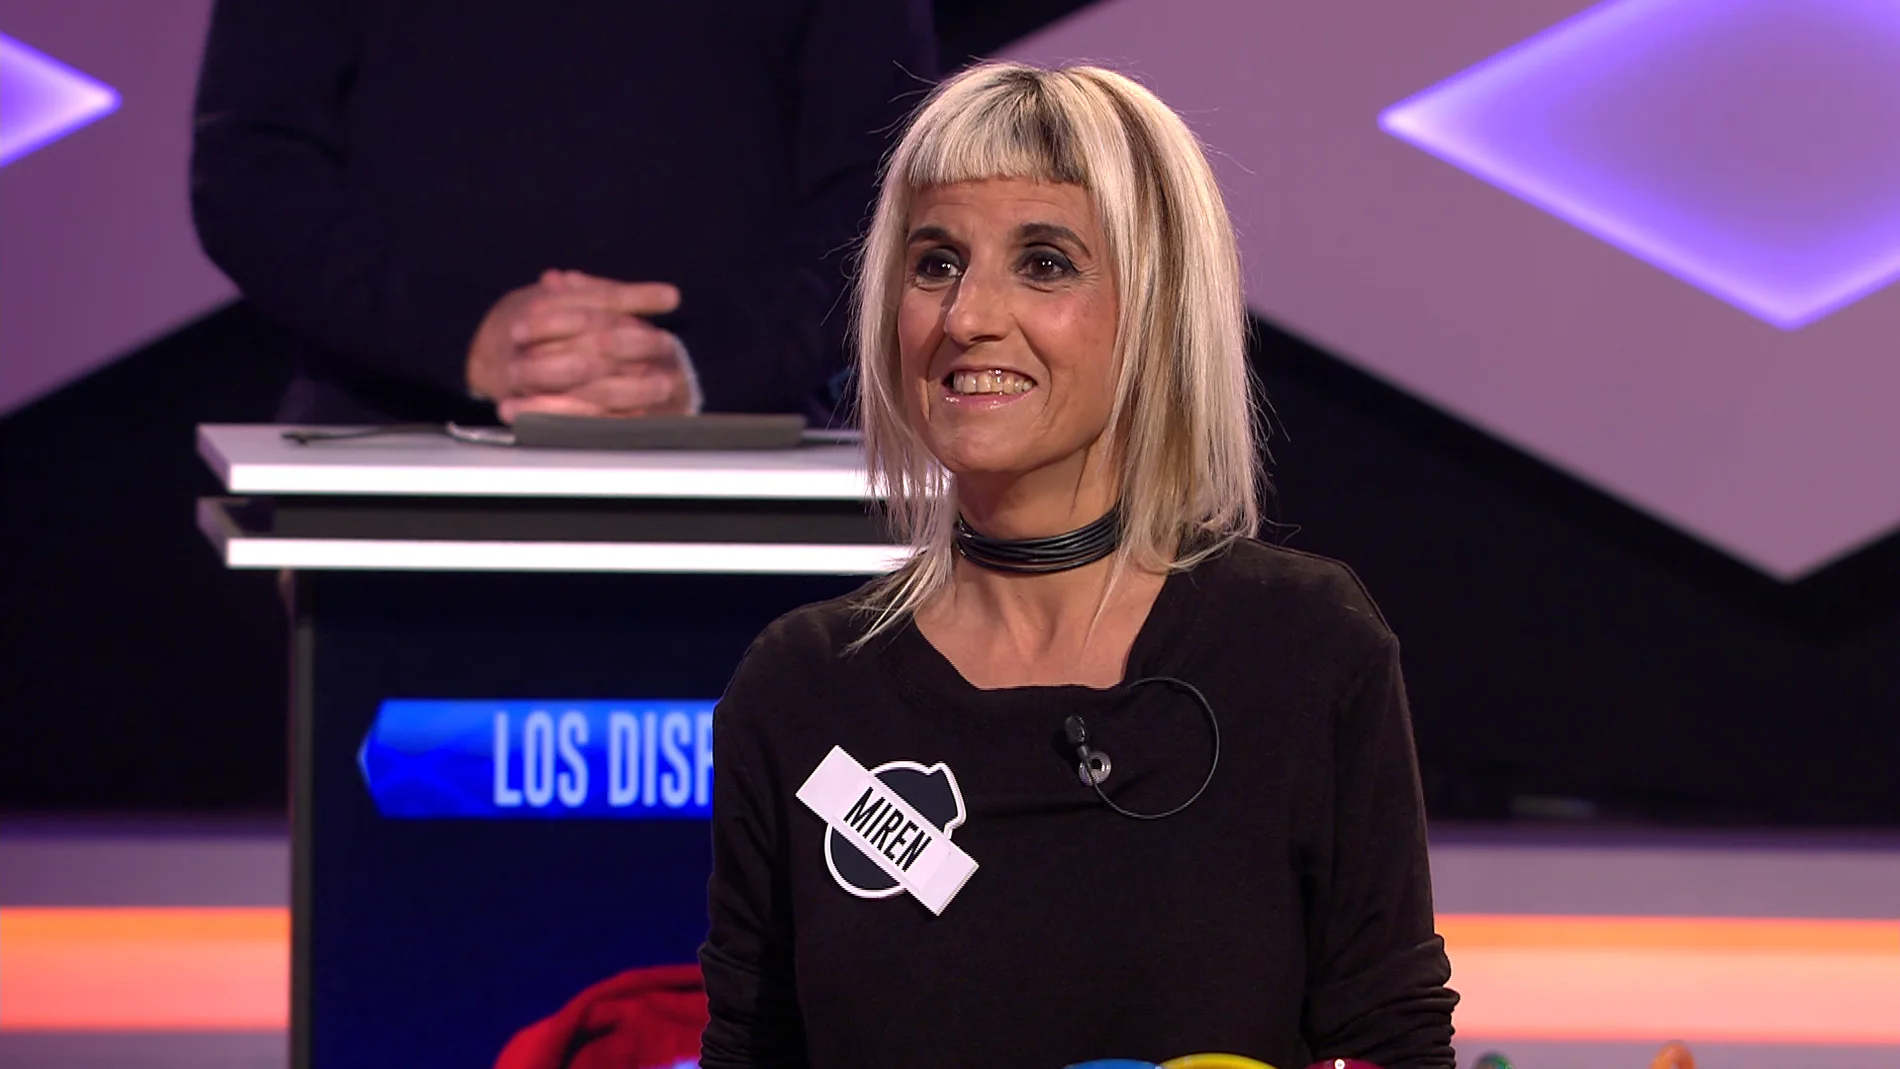 Una concursante confiesa su debilidad por un famoso: “Quien más morbo tiene es un catalán que está en Mánchester” 